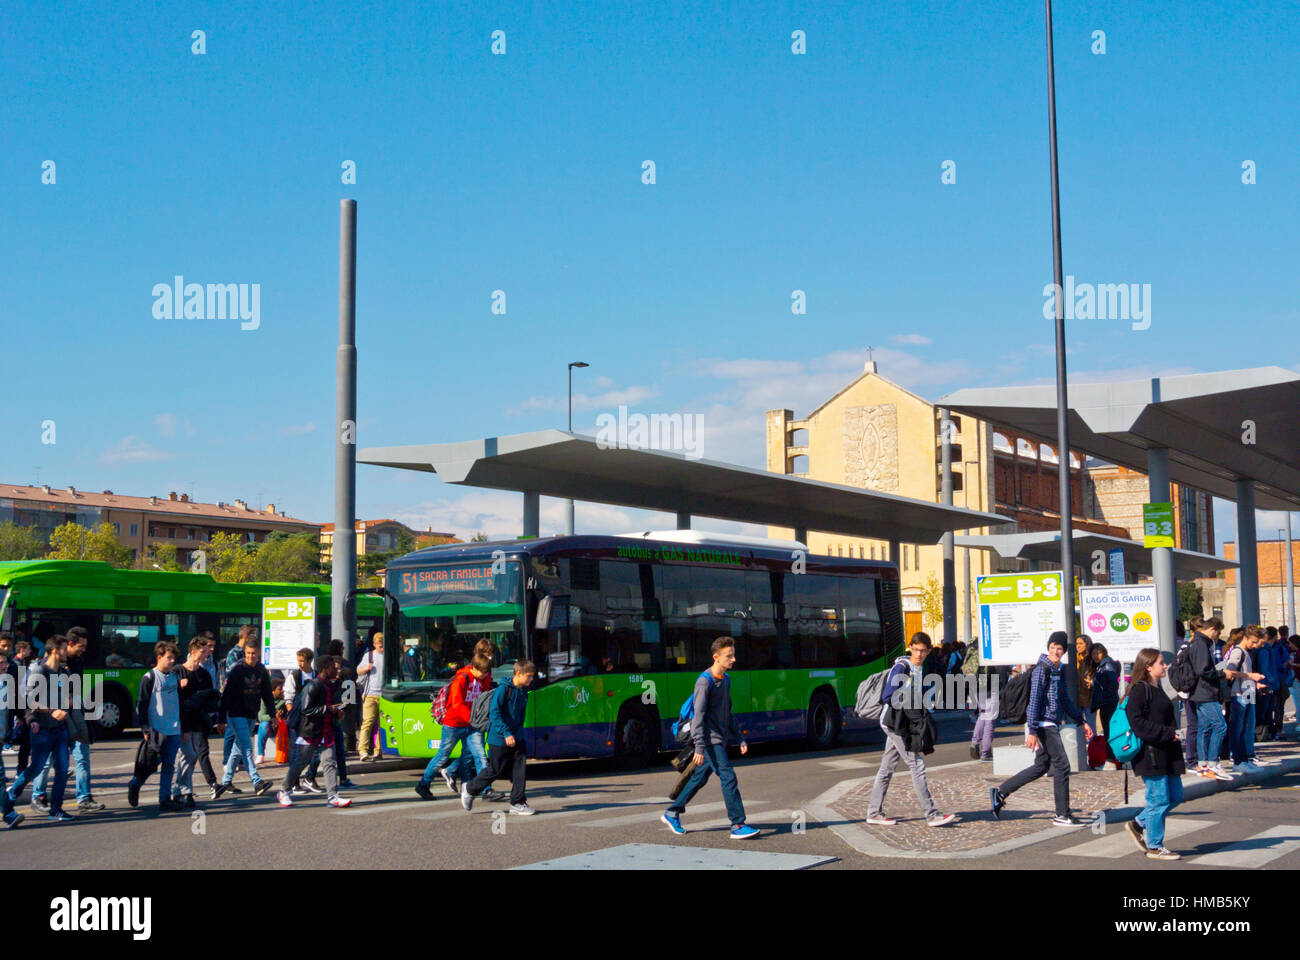 Verona porta nuova immagini e fotografie stock ad alta risoluzione - Alamy